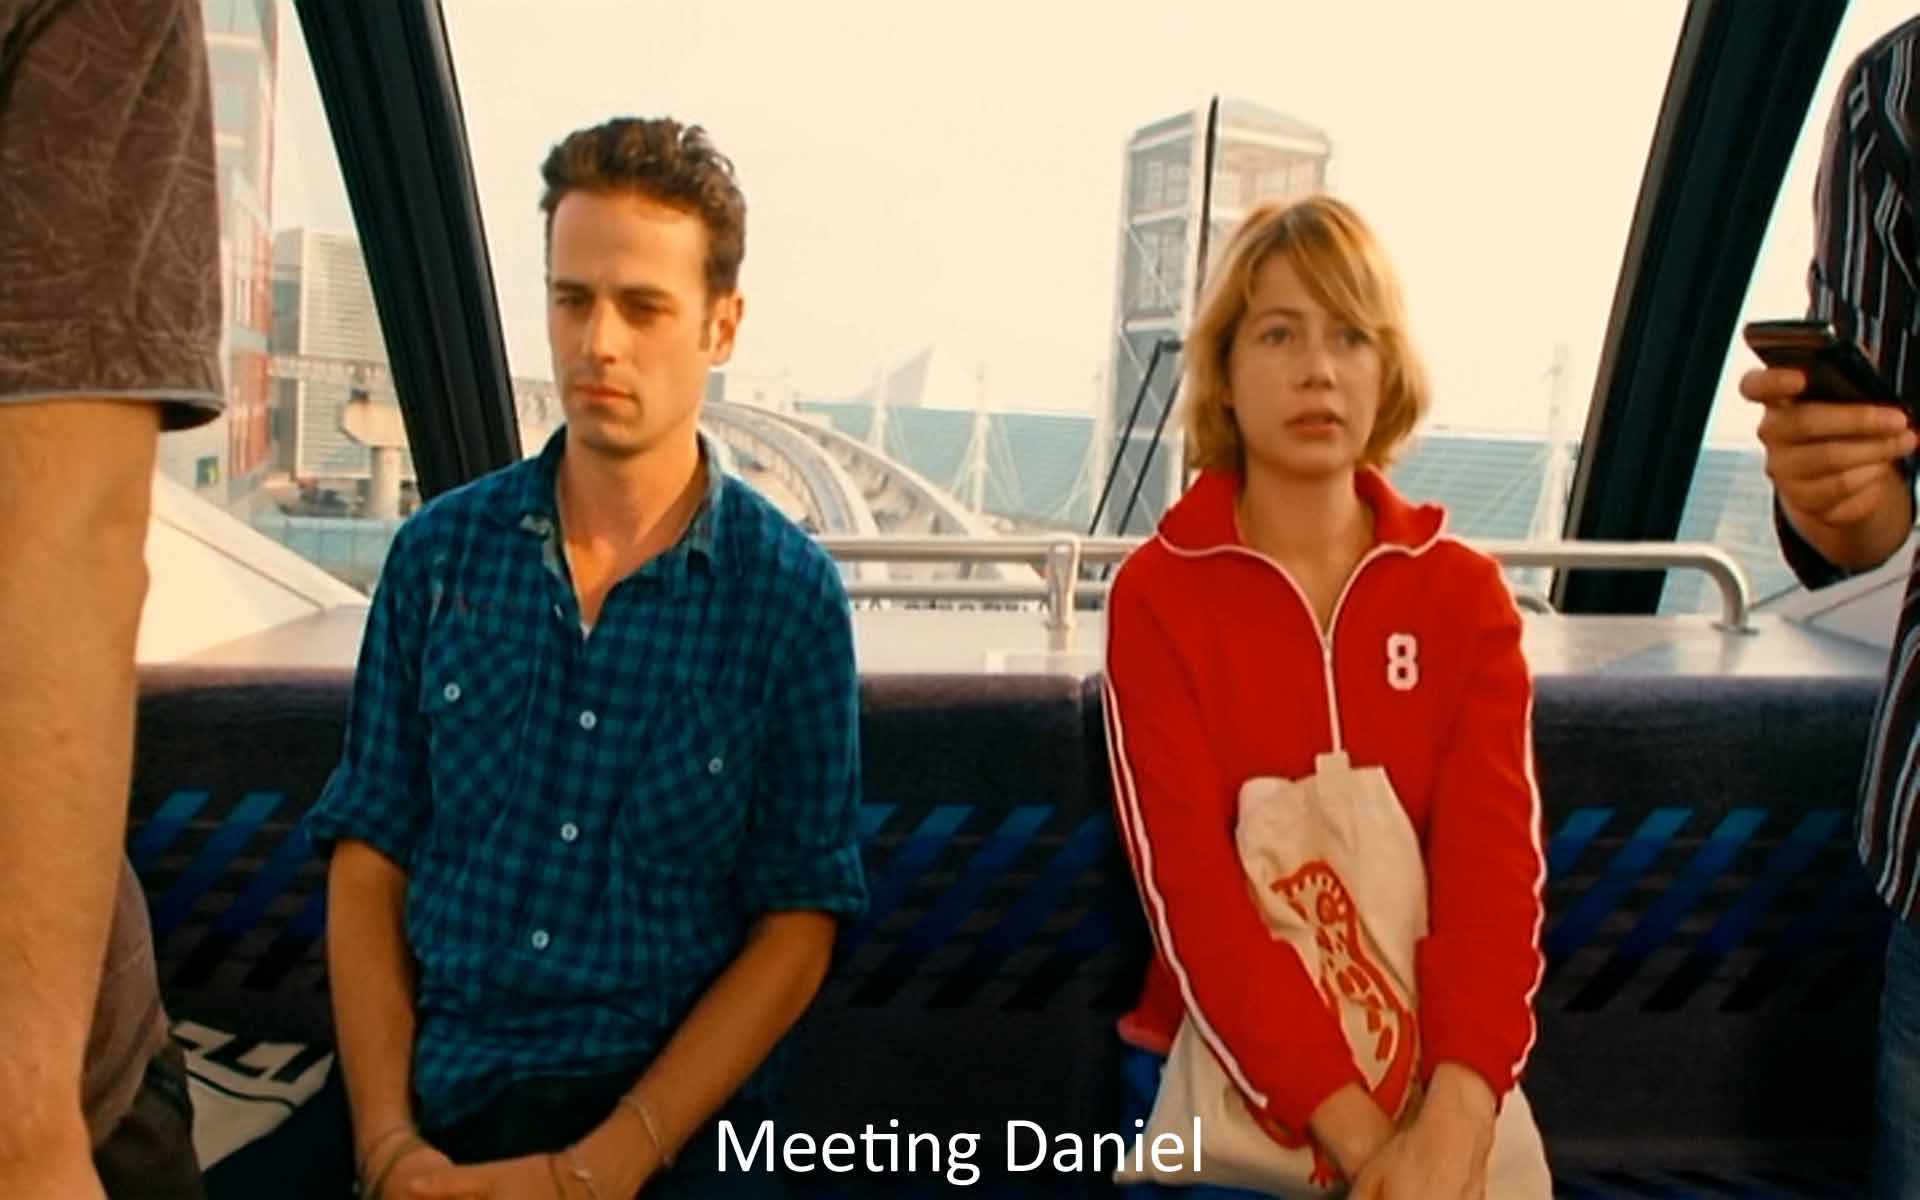 Meeting Daniel